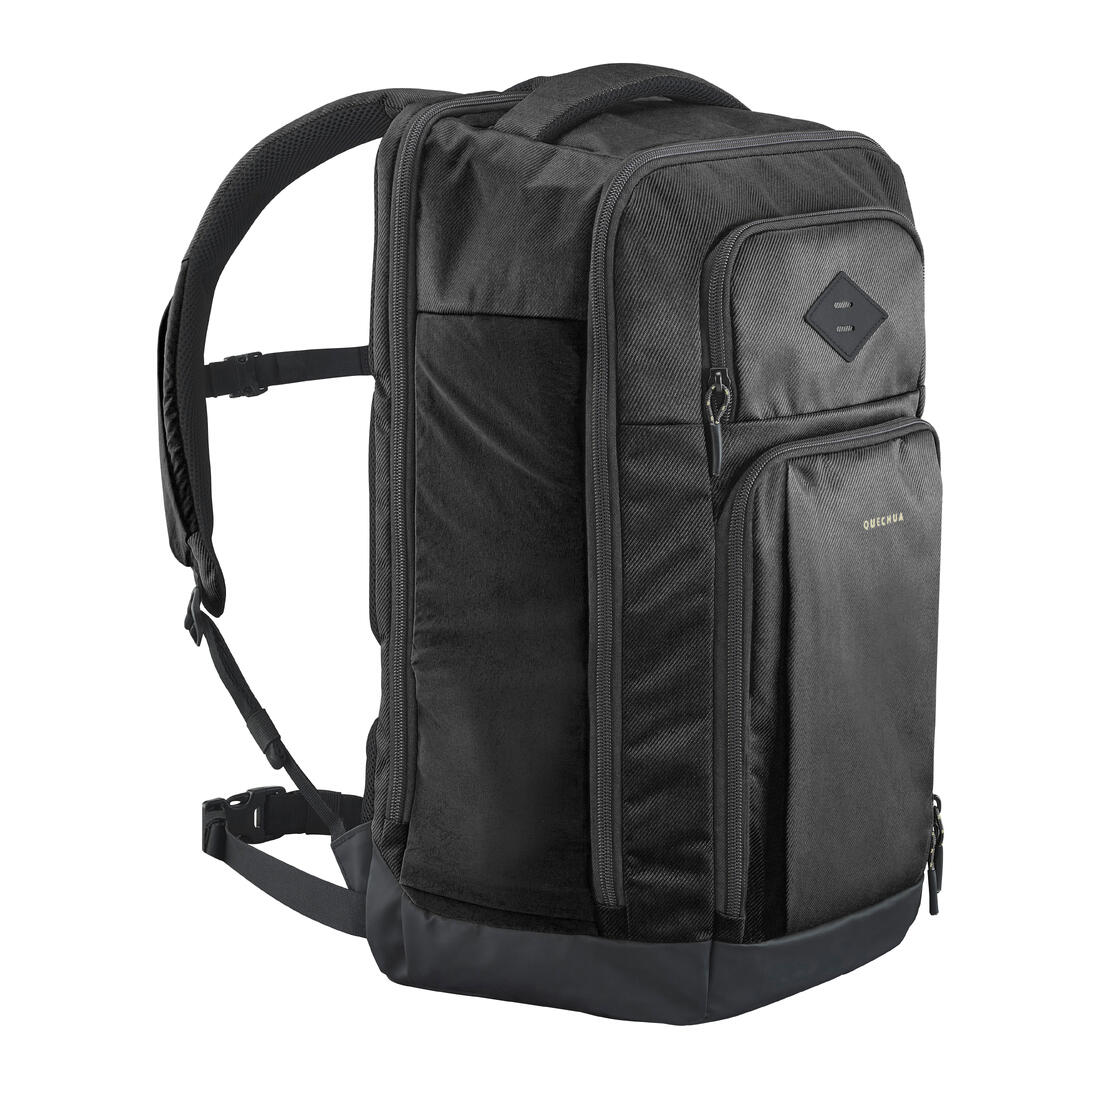 [ACERBIS] ハイドレーションバックパック Senter 7L Backpack Black